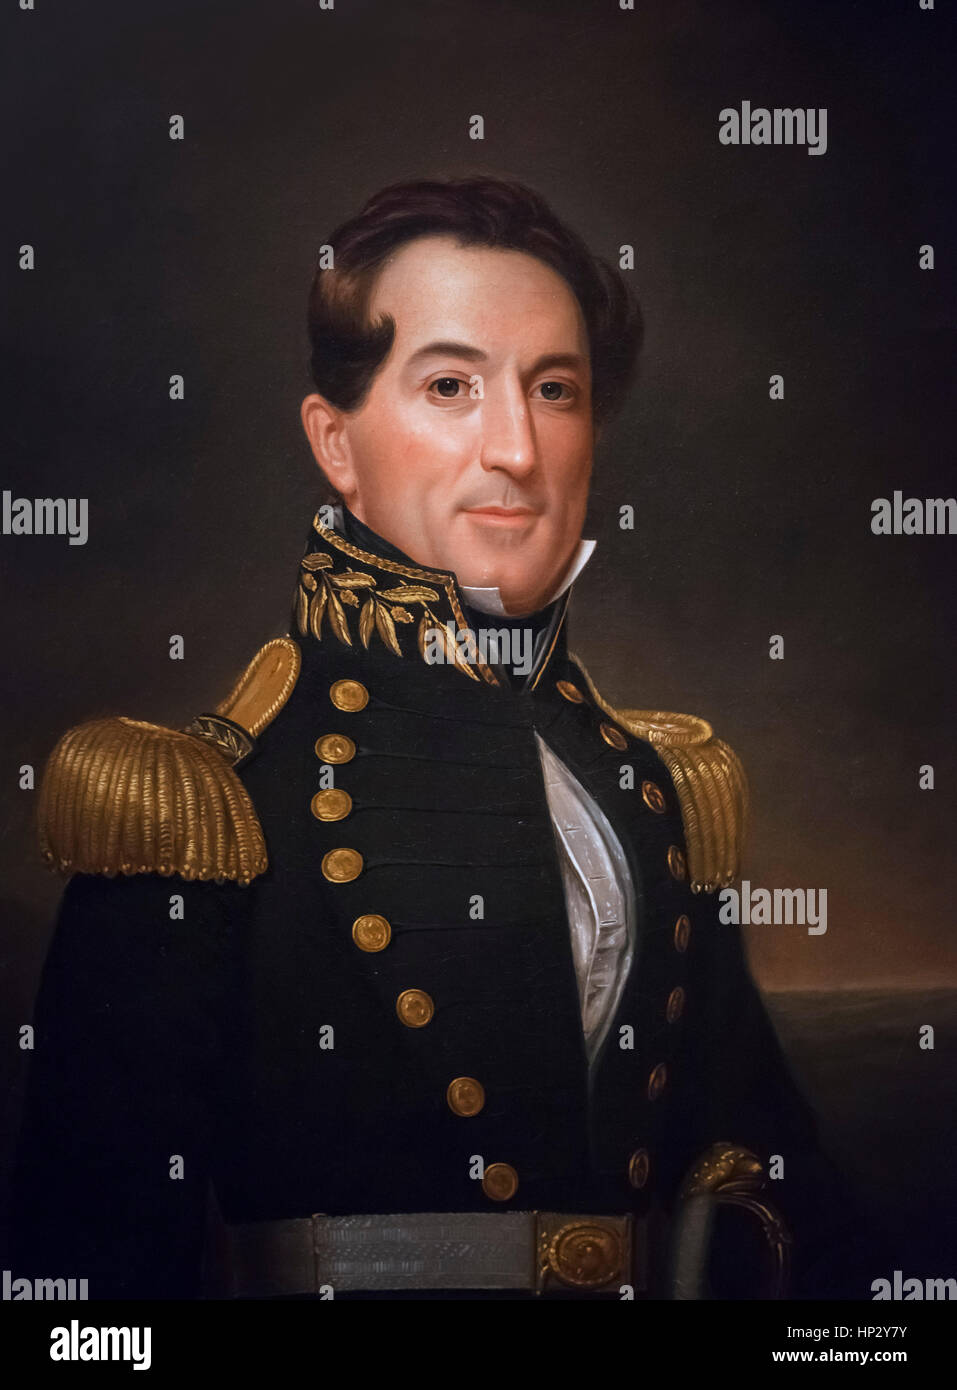 L'ammiraglio Farragut. Ritratto di marina degli Stati Uniti ammiraglio David Glasgow Farragut (1801-1870) da William Swain, olio su tela, 1838 Foto Stock